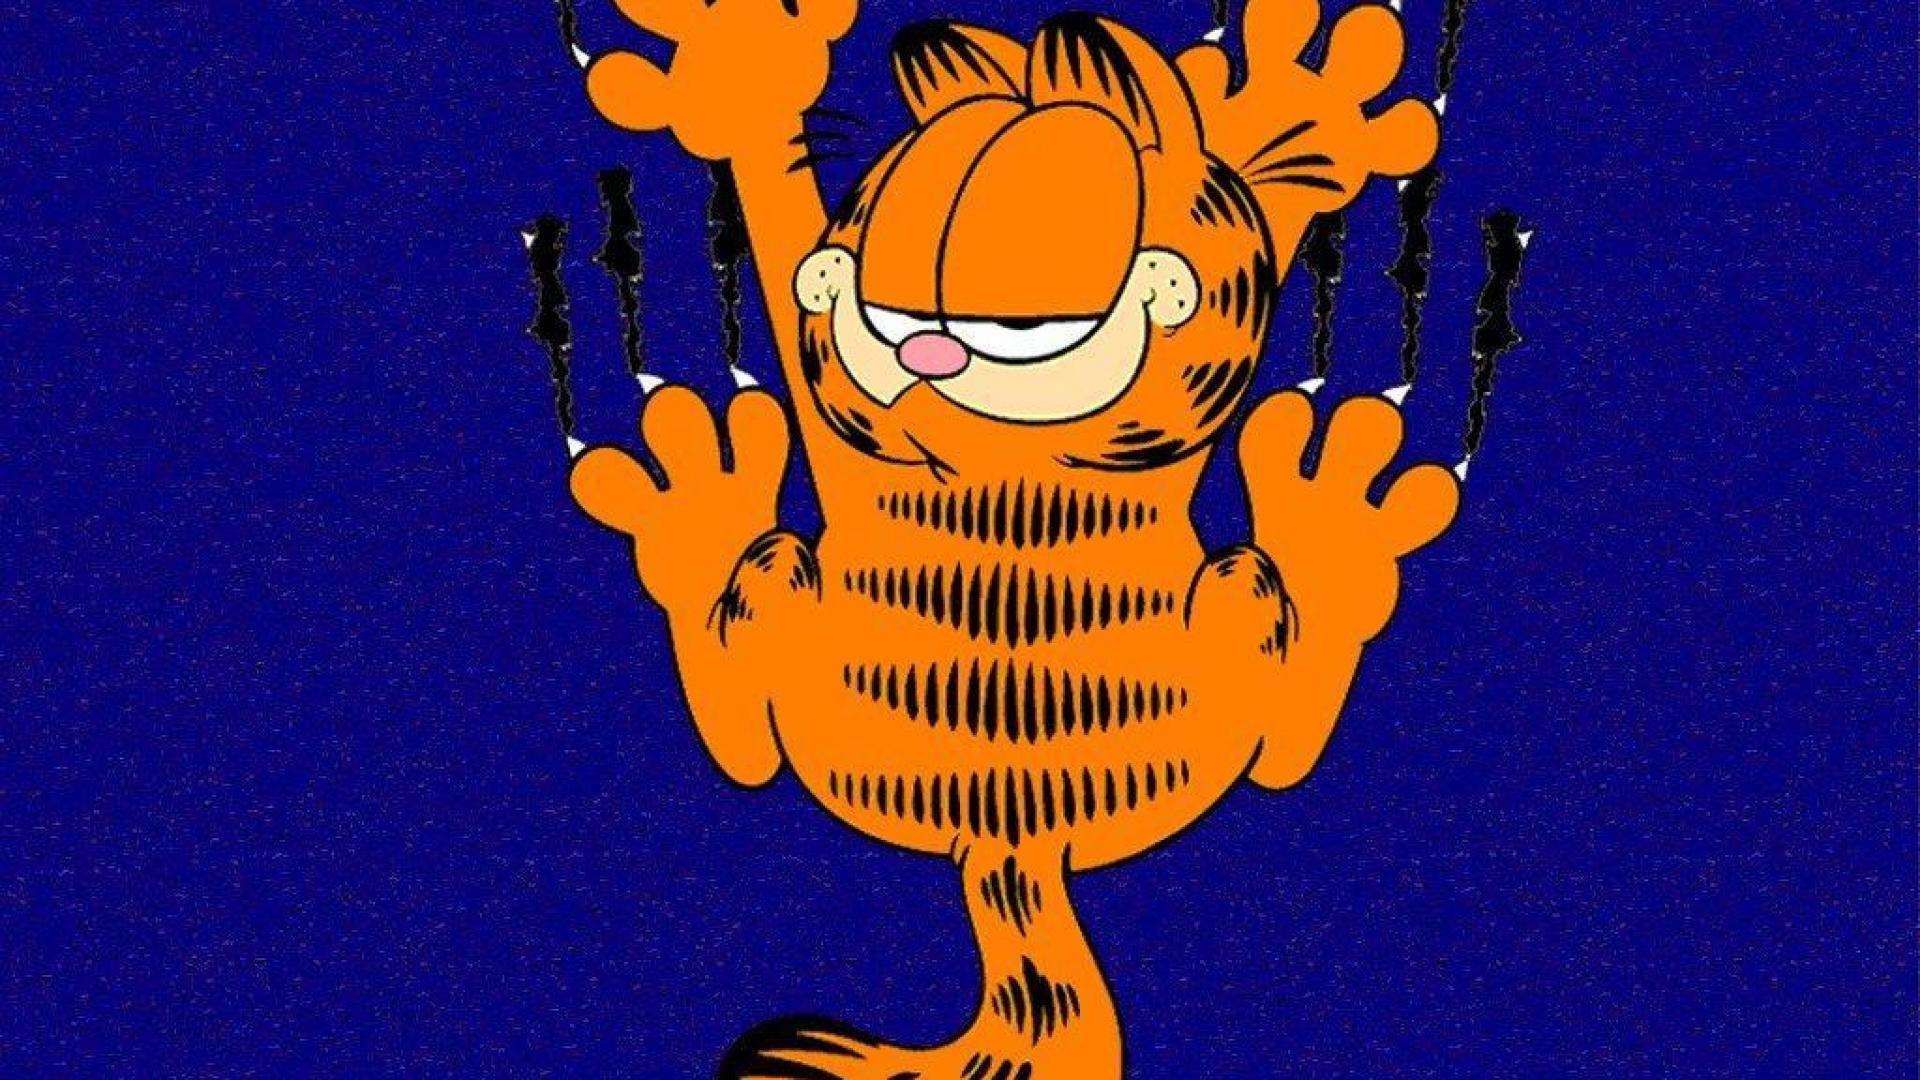 Garfield wallpaper hd